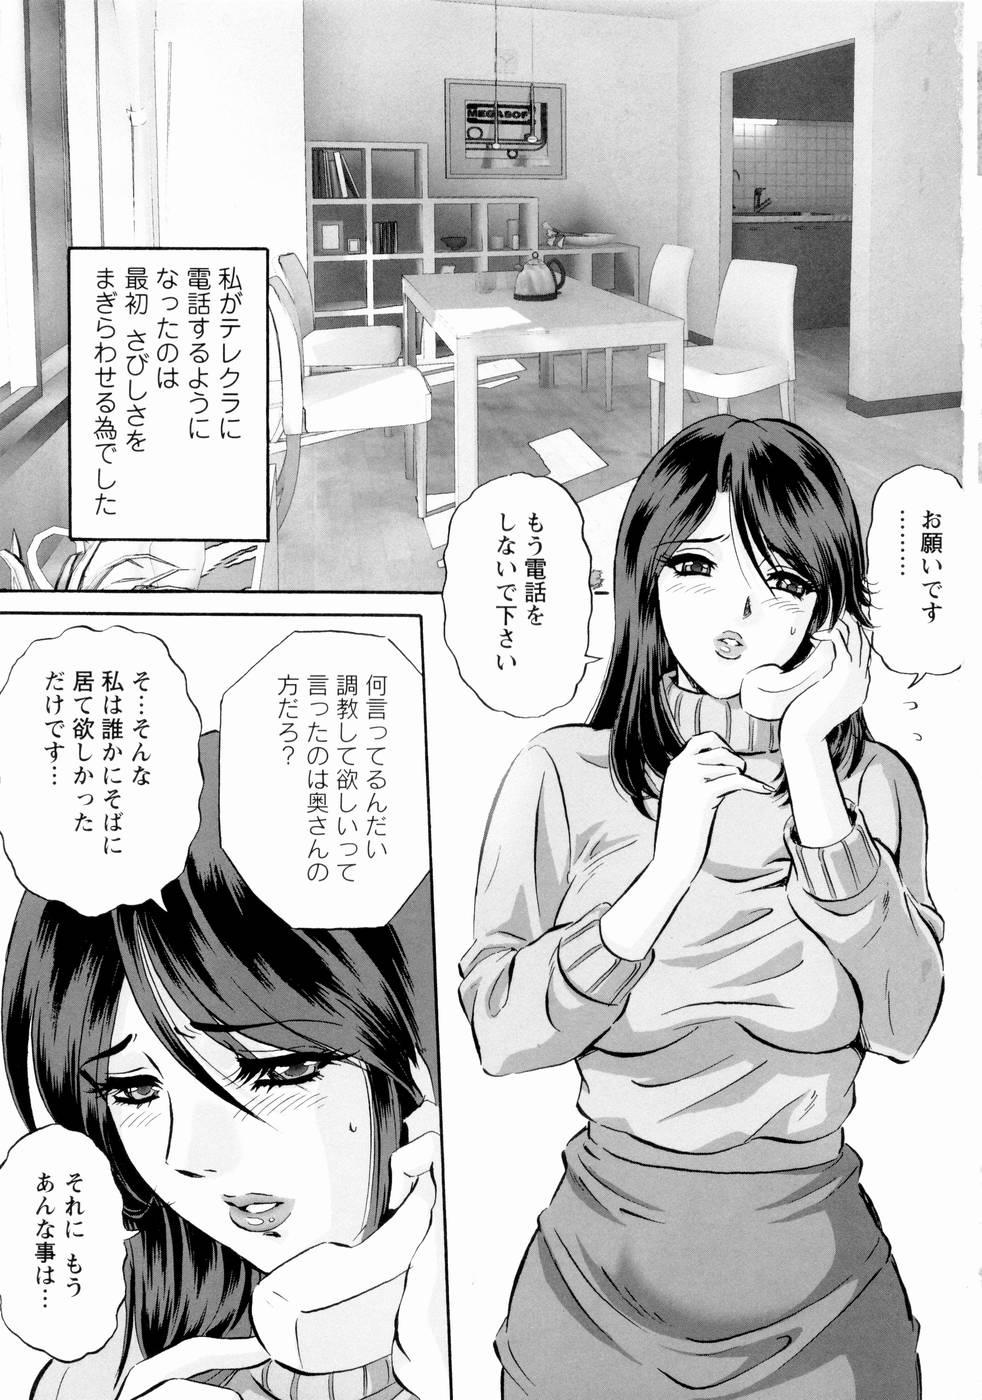 Butts Roshutsuzuma Reiko - Reiko The Exposed Wife Letsdoeit - Page 8